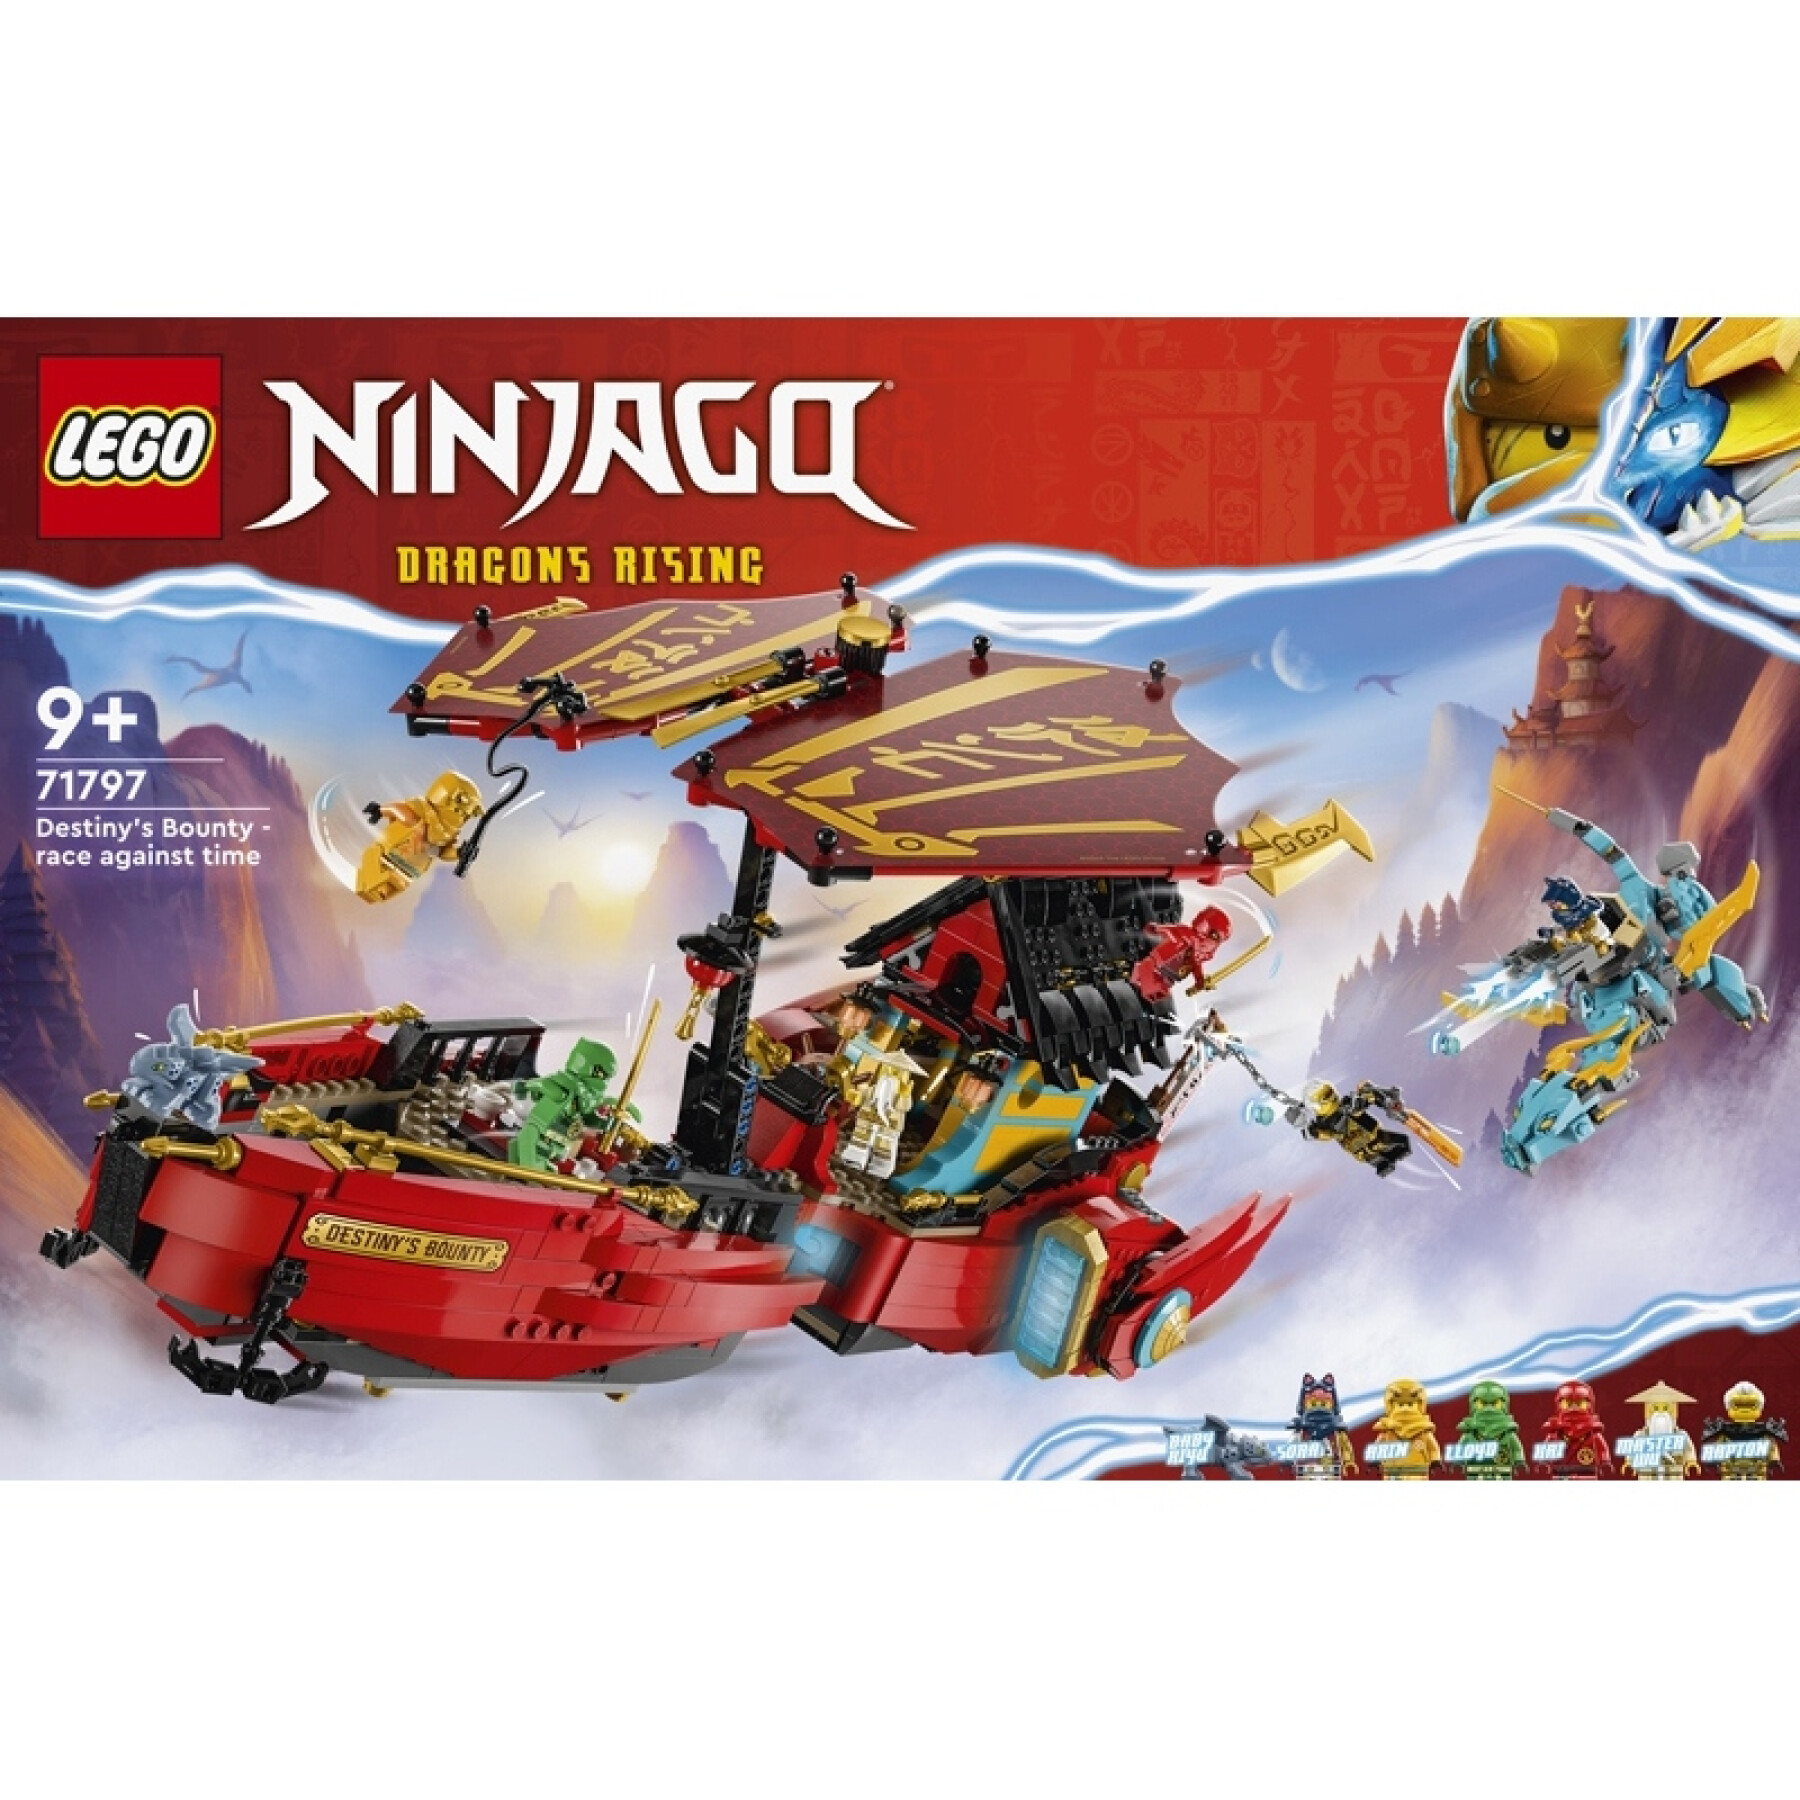 Jeux de construction Lego Qg Des Ninjas Ninjago